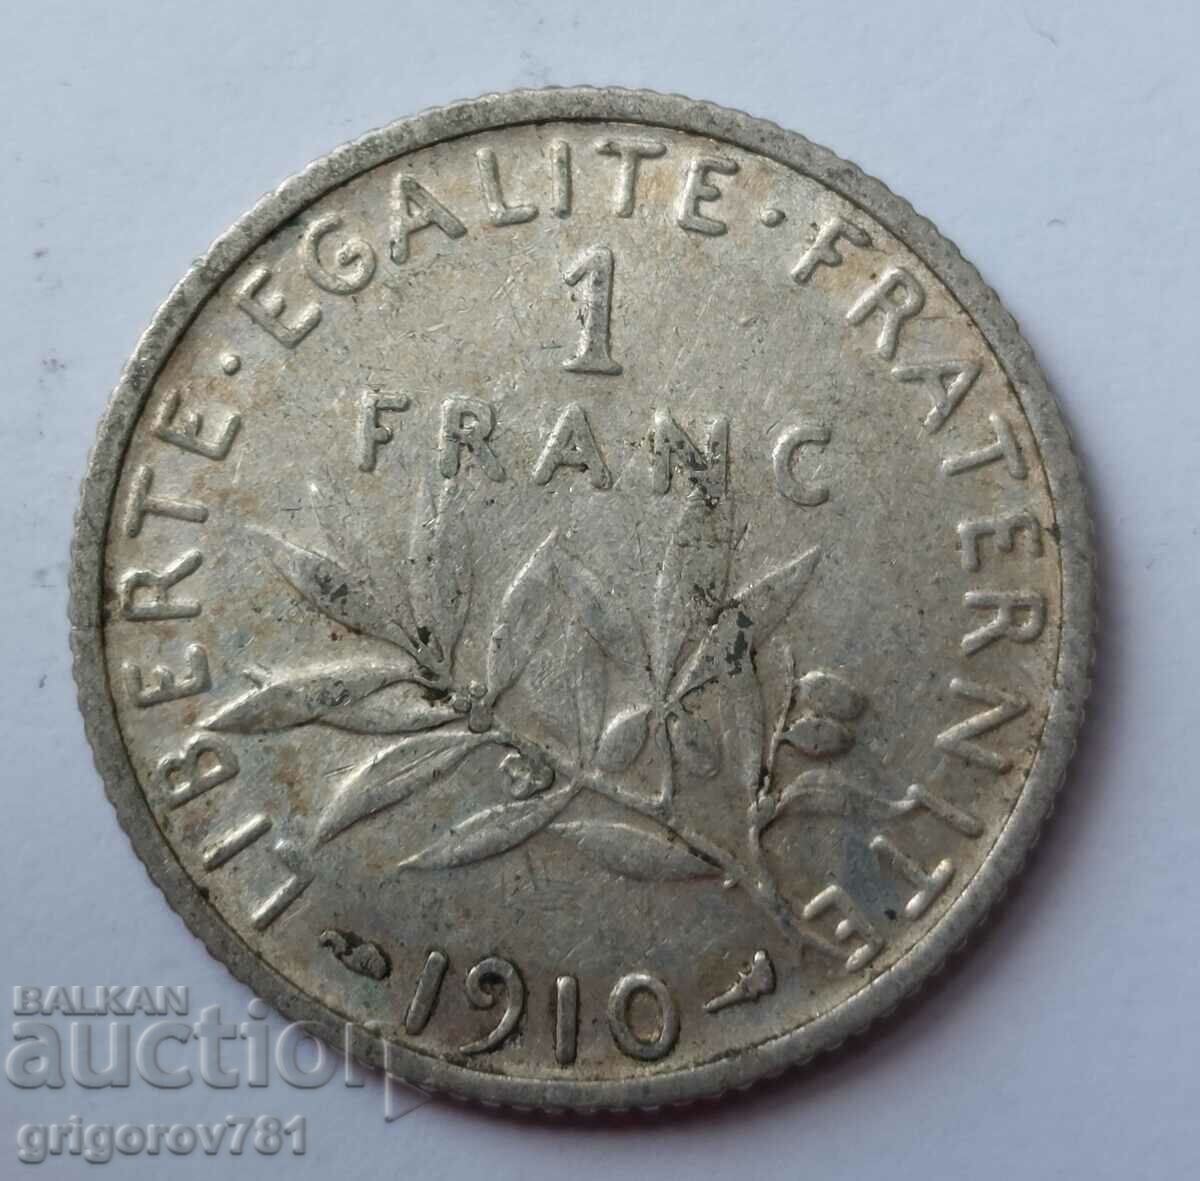 Ασημένιο 1 φράγκου Γαλλία 1910 - ασημένιο νόμισμα №31